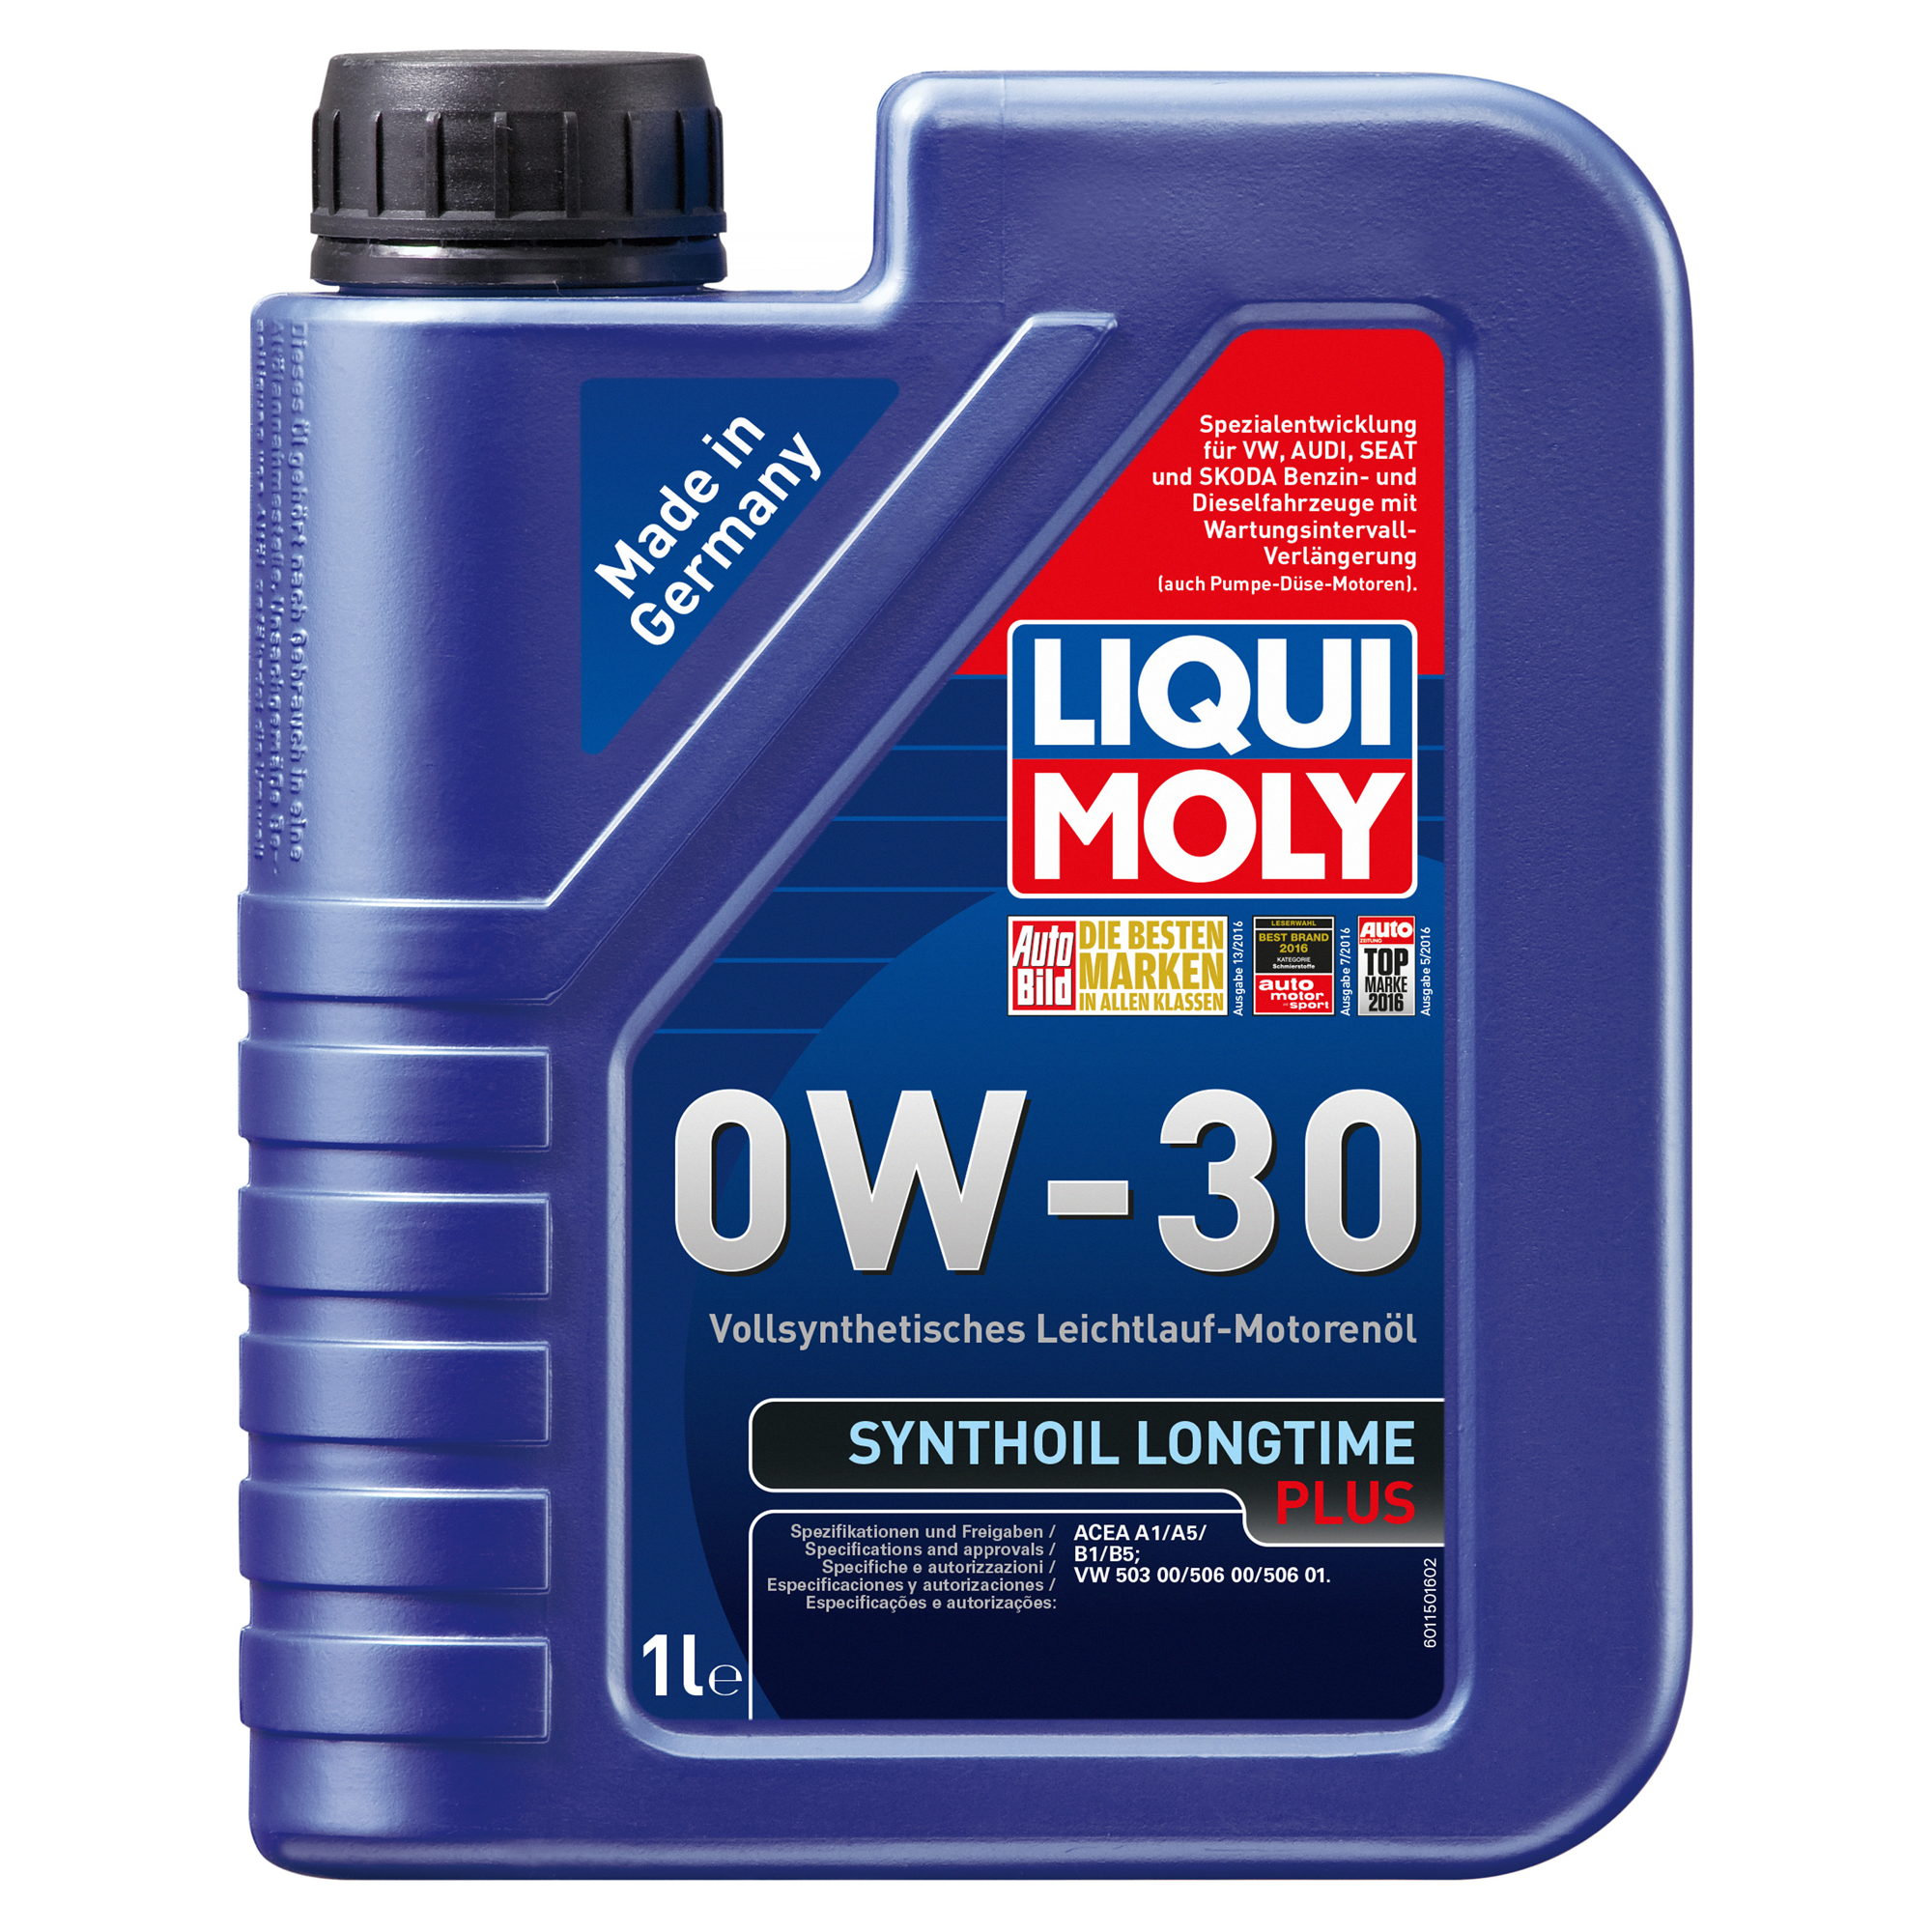 Leichtlauf-Motorenöl 'Synthoil Longtime Plus' 0W-30, 1 l + product picture